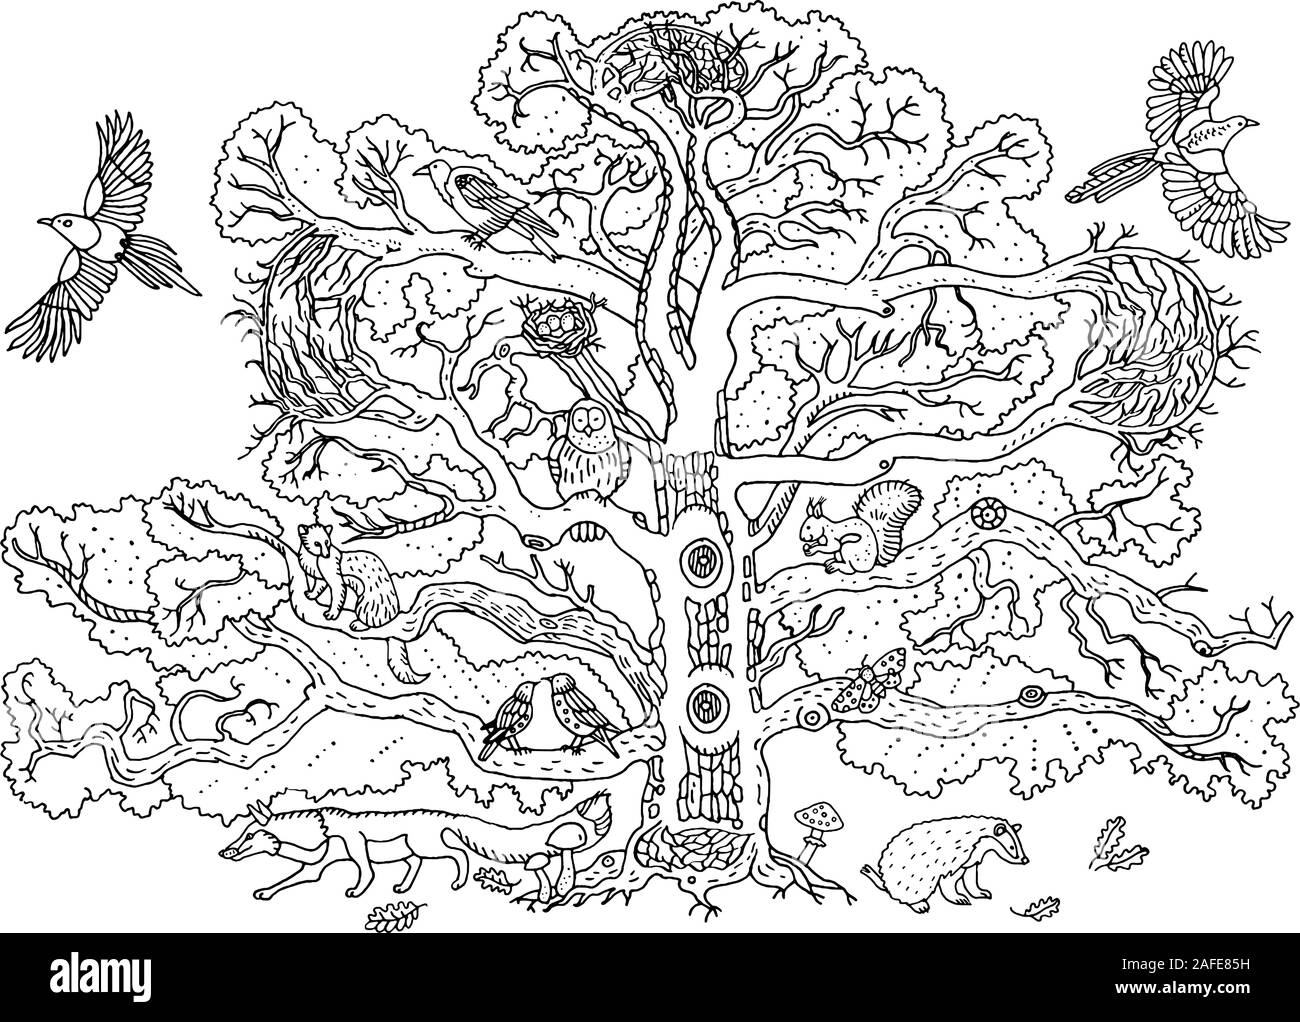 Süße Tiere auf der Eiche Baum: Magpie, Krähe, Eule, starling, Frettchen, Eichhörnchen, Dachs, Fuchs. Zweige, Blätter und Pilze. Umwelt, Natur. Hand d Stock Vektor